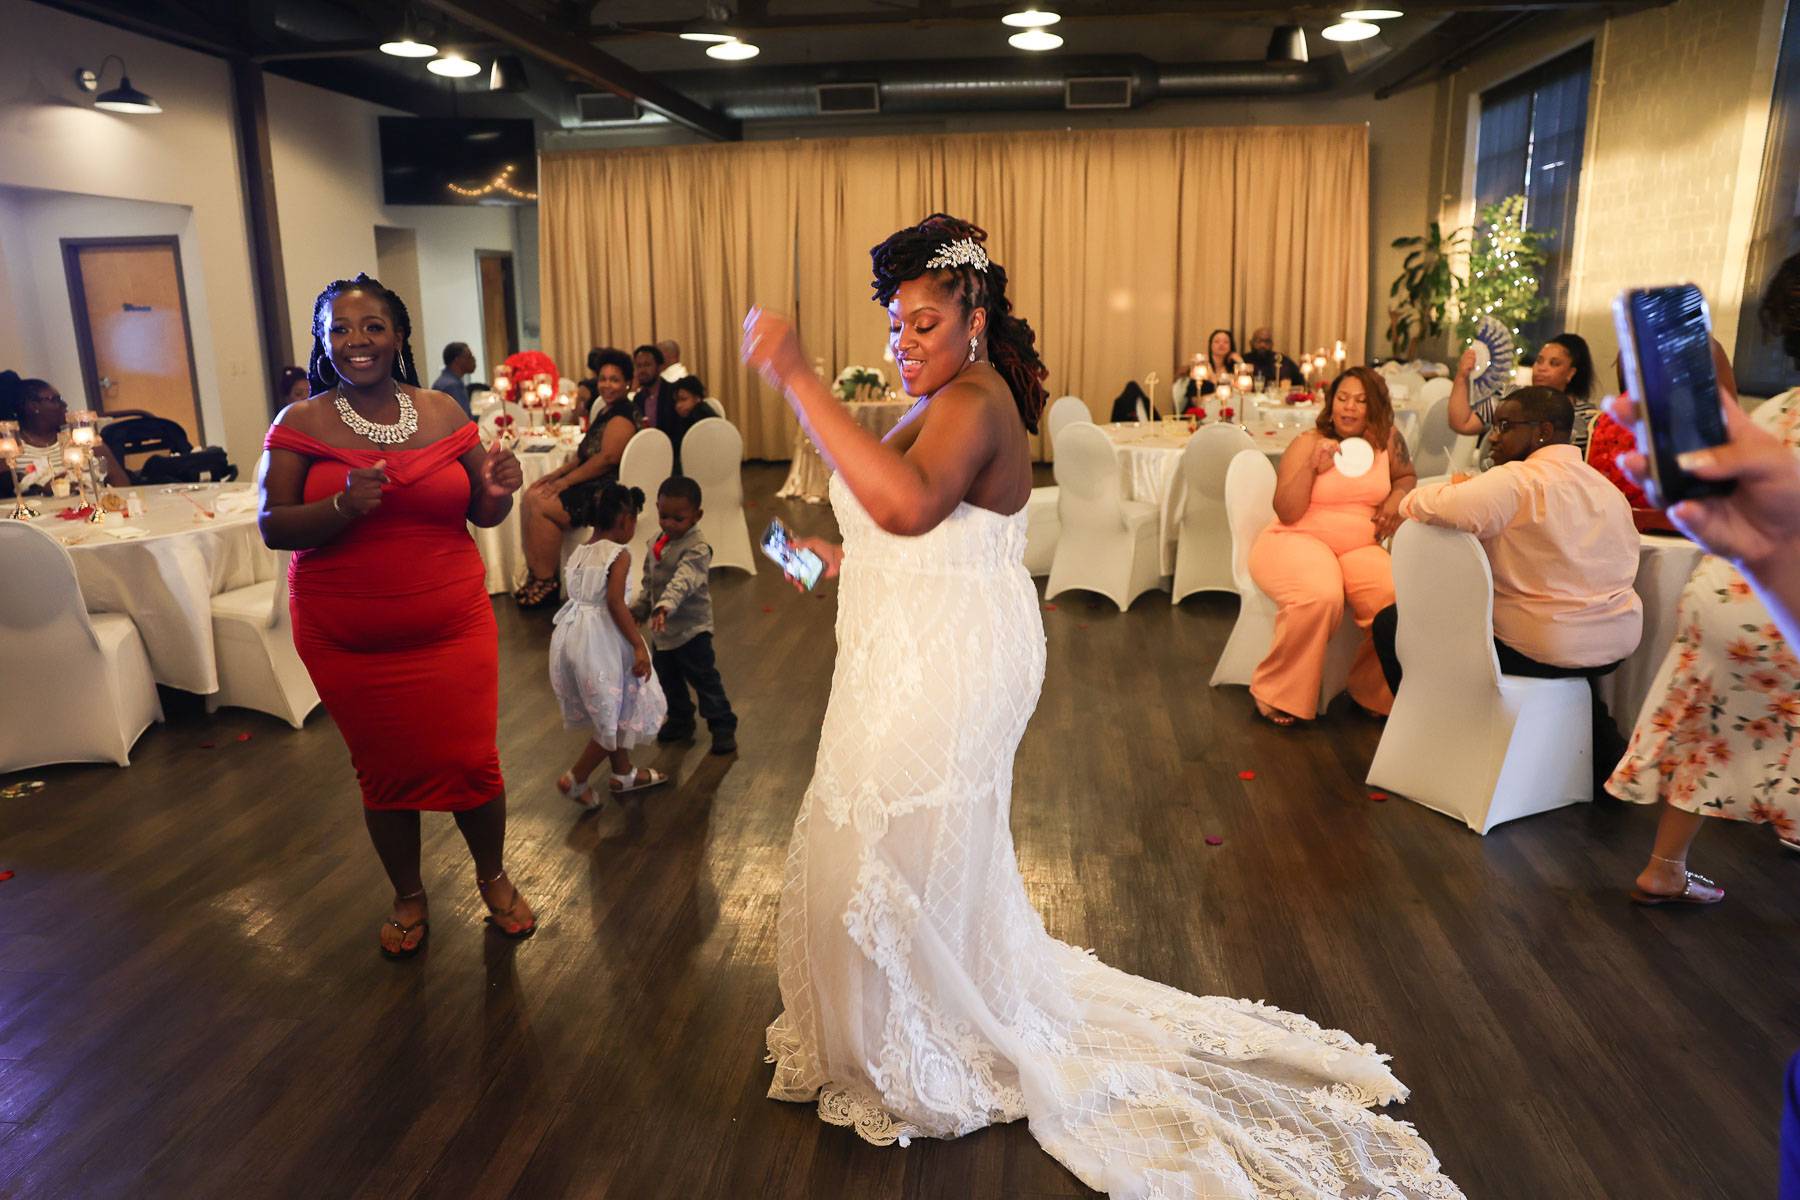 The bride dancing in her wedding dress